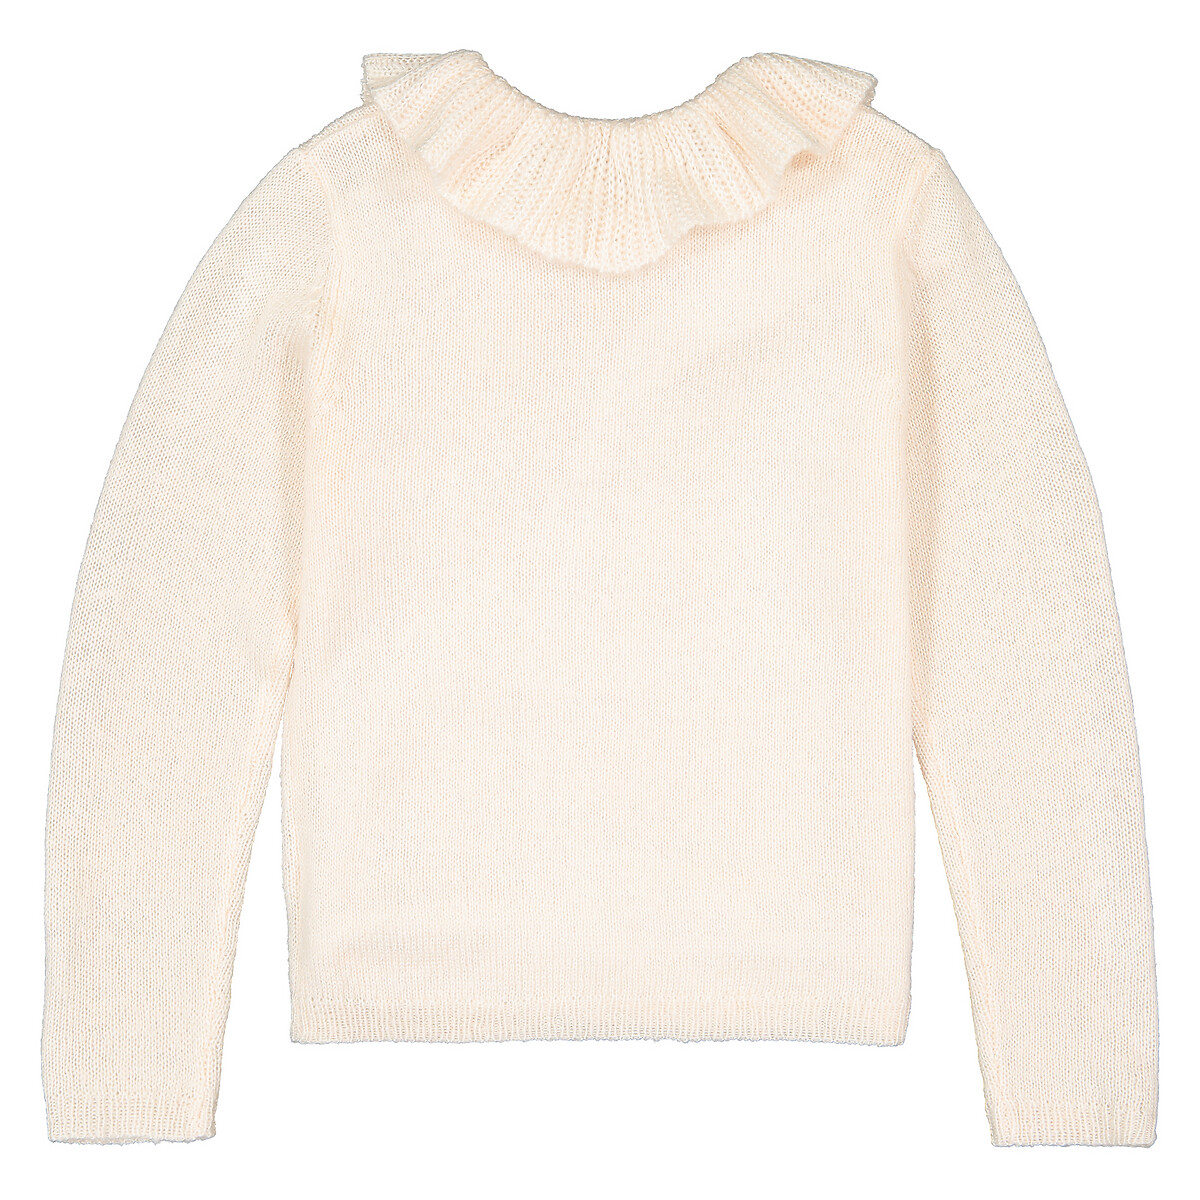 Пуловер LaRedoute С круглым вырезом с воланами из тонкого трикотажа 3-12 лет 4 года - 102 см розовый, размер 4 года - 102 см - фото 4